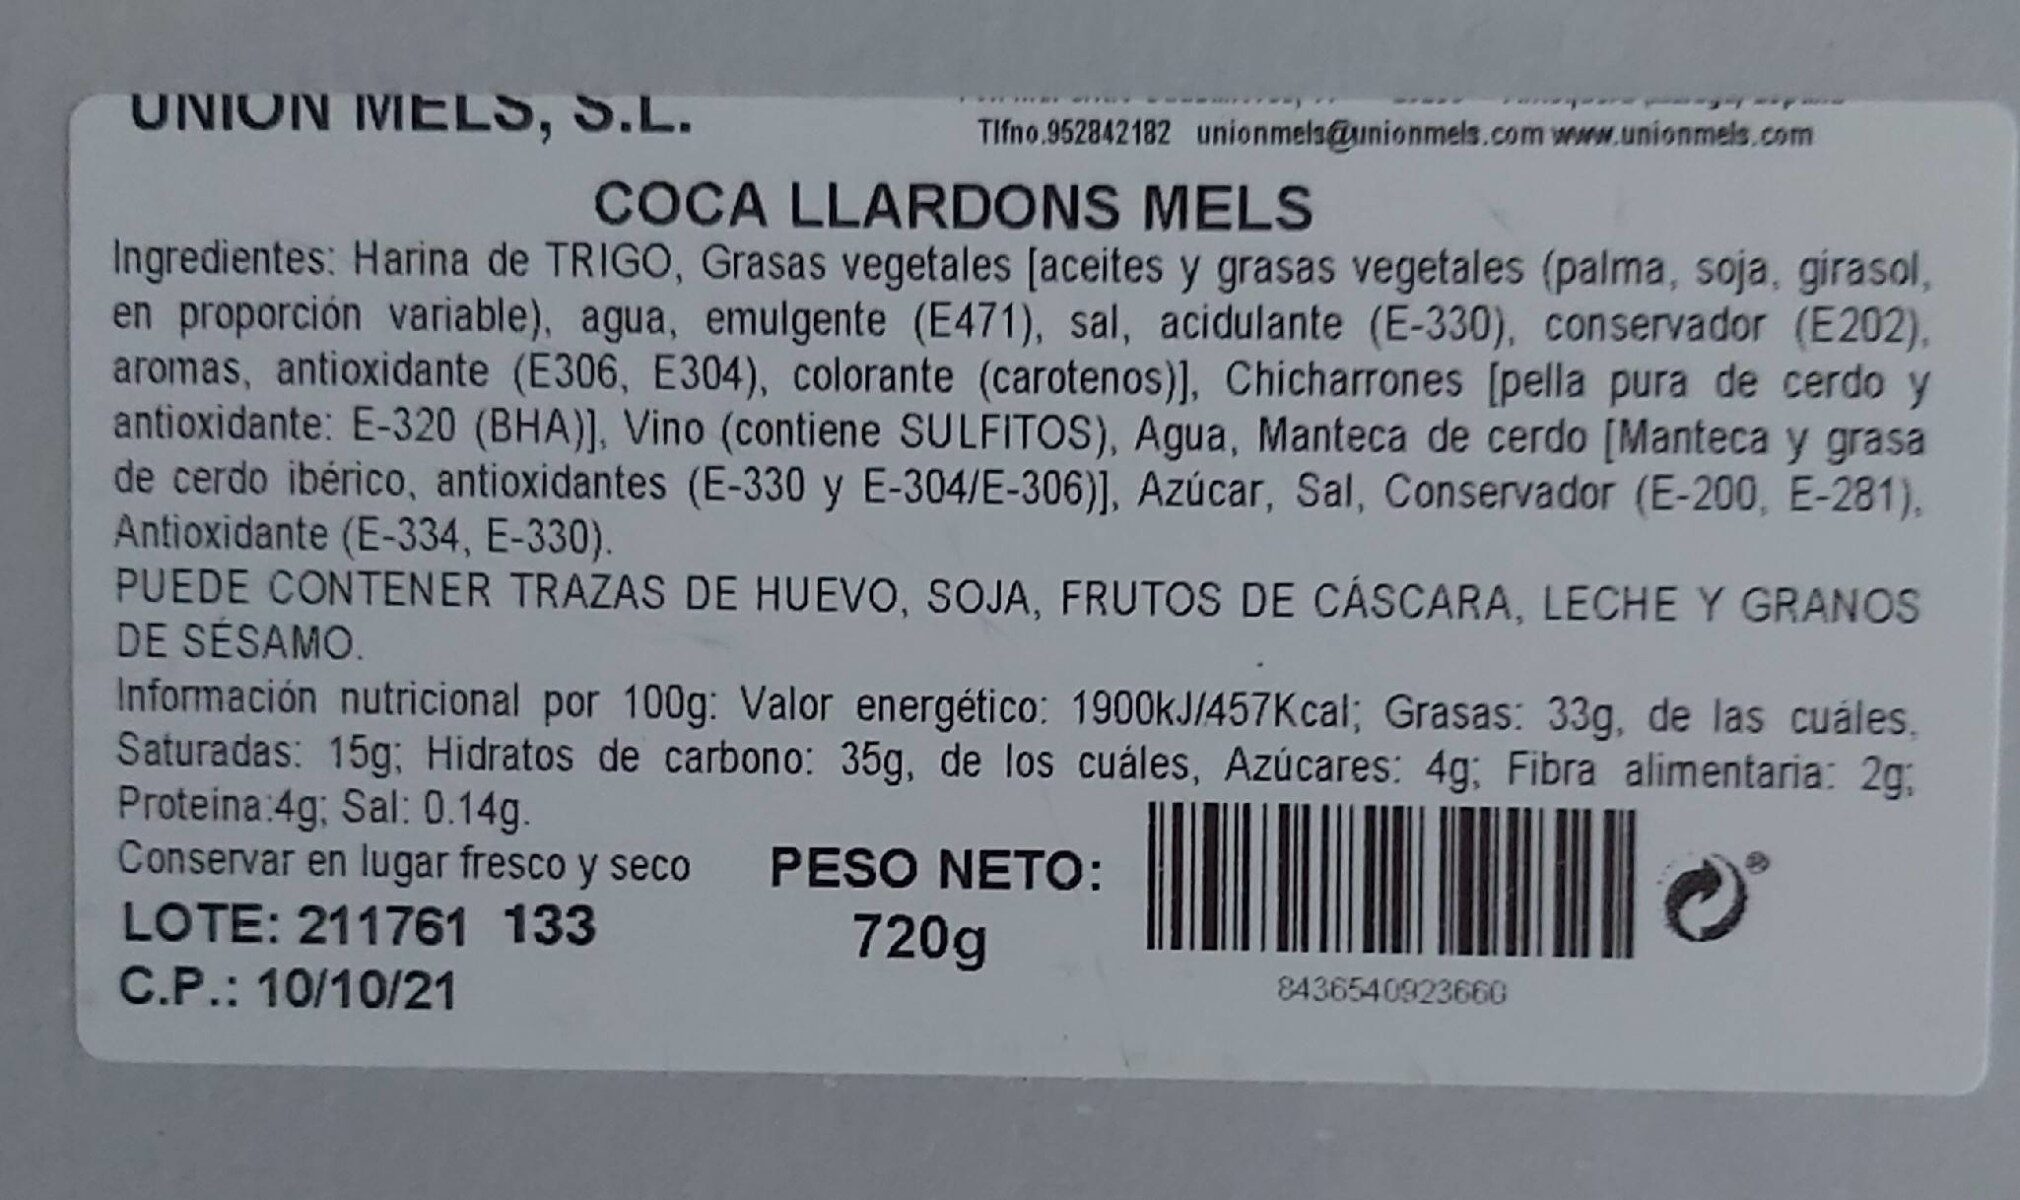 Coca de chicharrones - Información nutricional